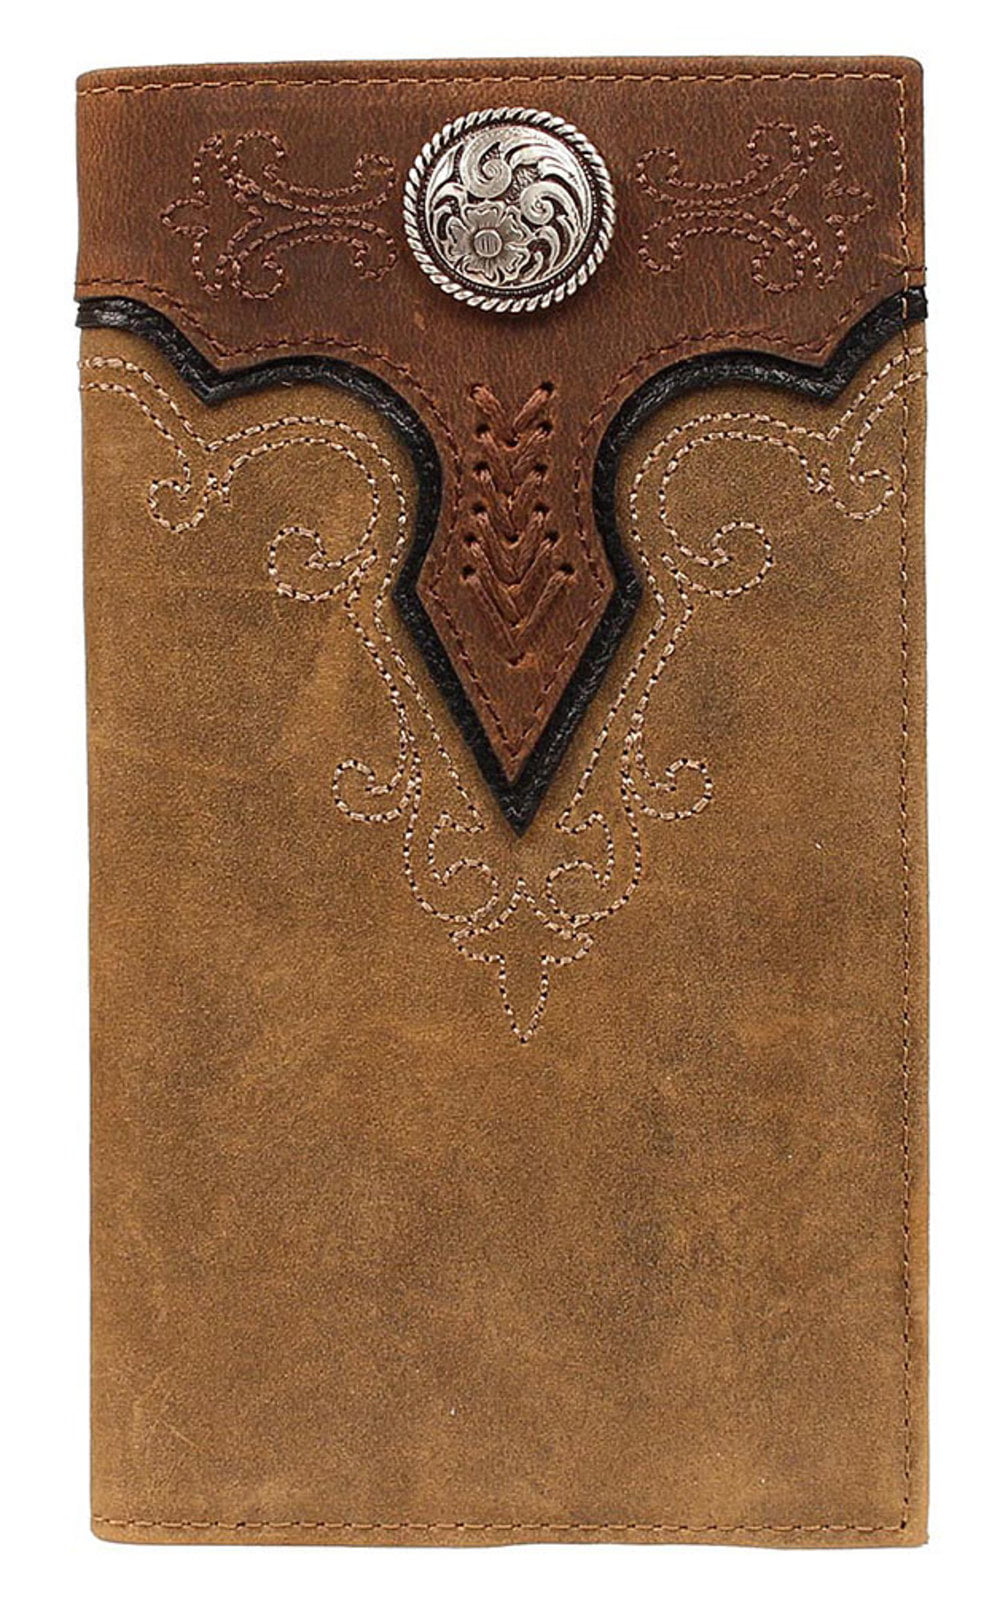 Ariat Accessories Men's Rodeo Embossed Wallet BROWN OS - Walmart.com